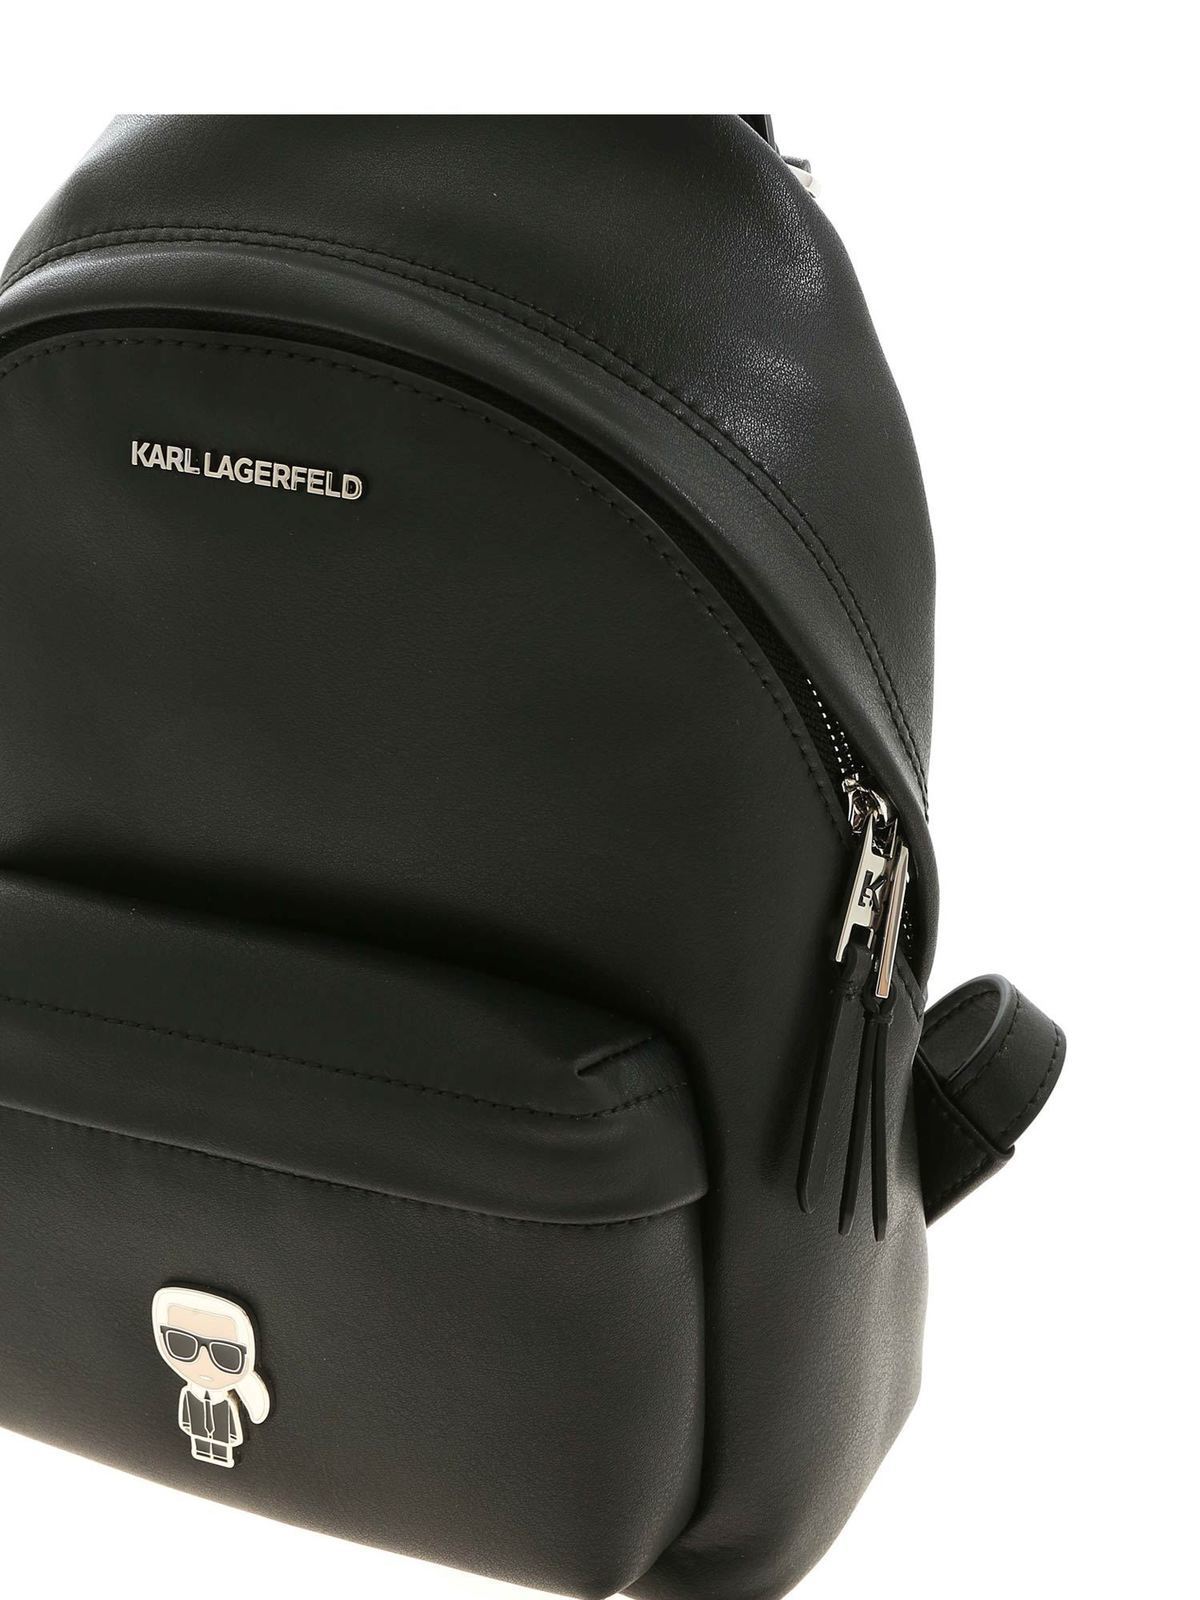 Mochilas Karl Lagerfeld - - Negro - 205W3090BLACK iKRIX.com